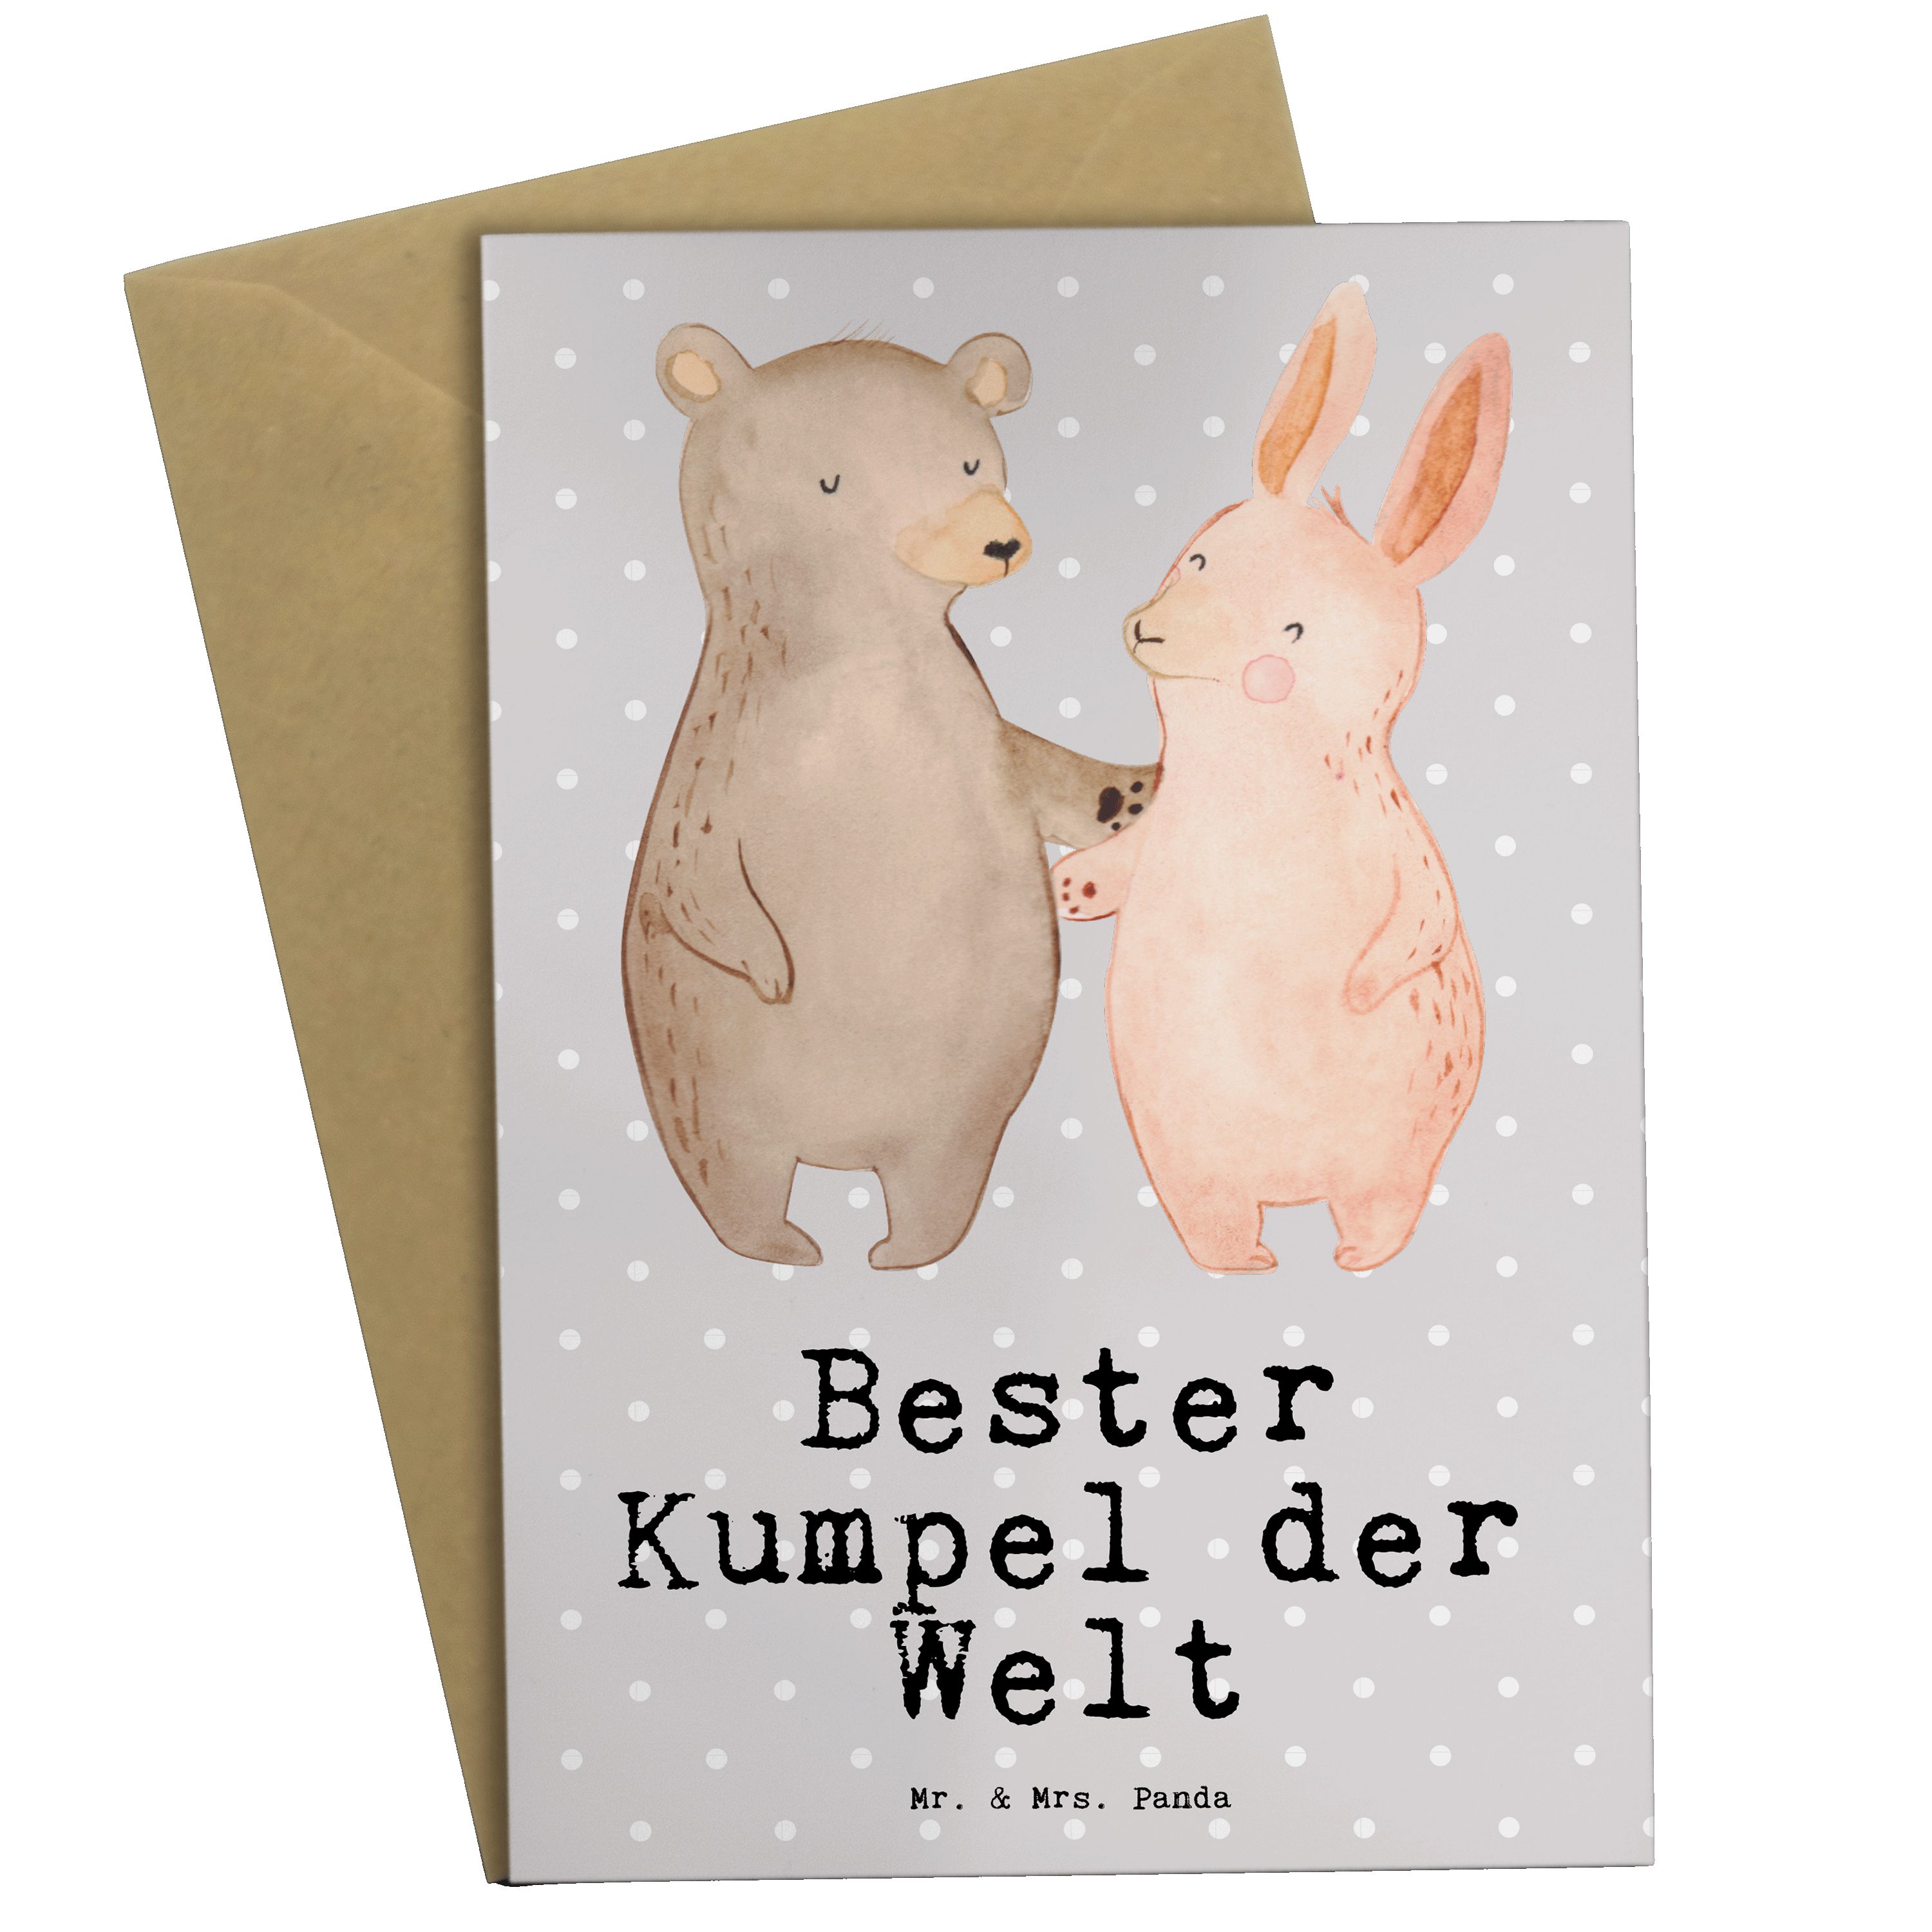 Mr. & Mrs. Panda Grußkarte Hase Bester Kumpel der Welt - Grau Pastell - Geschenk, Freude machen